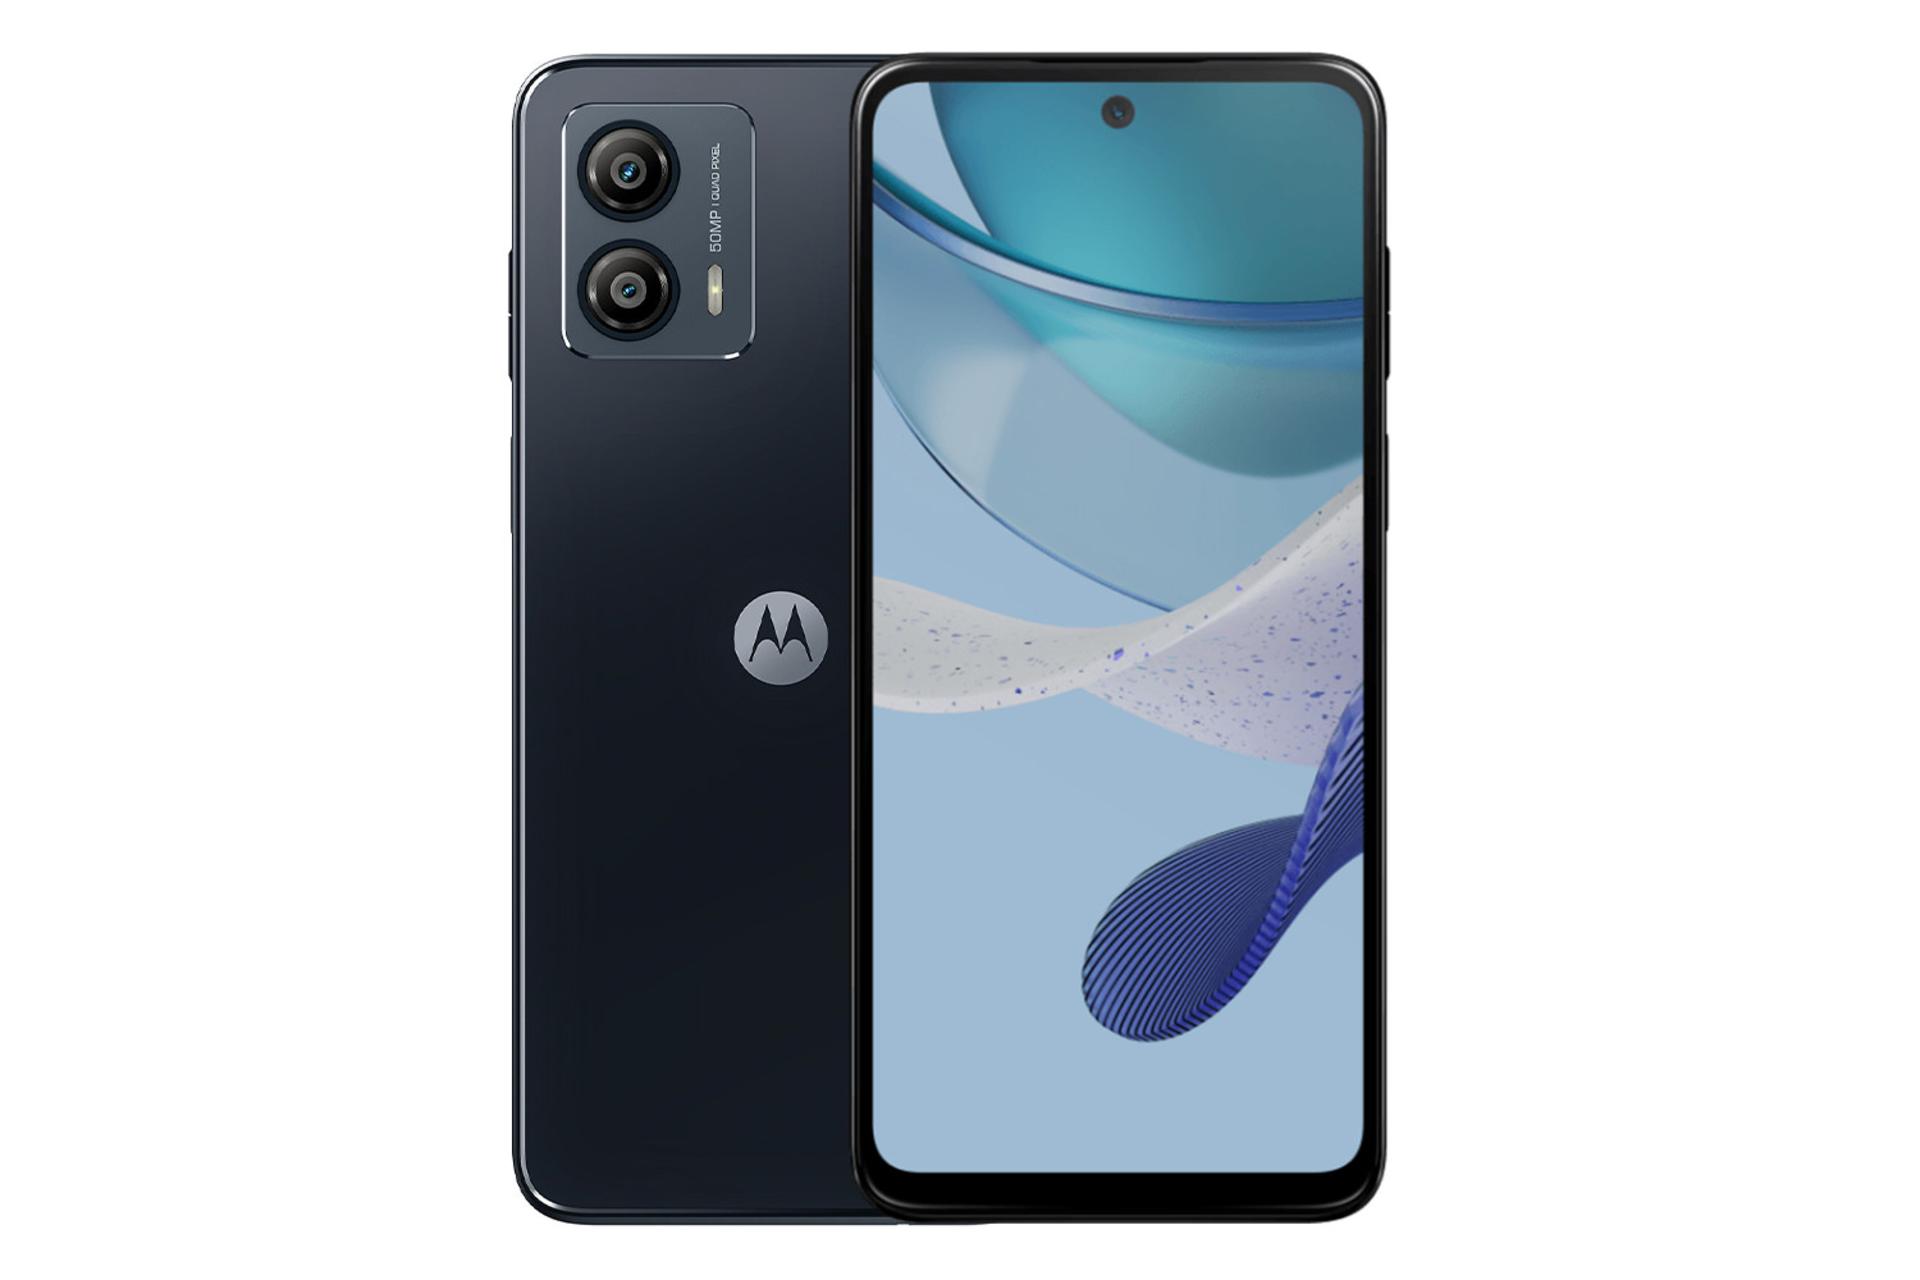 نمای کلی گوشی موبایل موتو G53 موتورولا / Motorola Moto G53 با نمایشگر روشن و نمایش لوگو و دوربین پنل پشت رنگ آبی